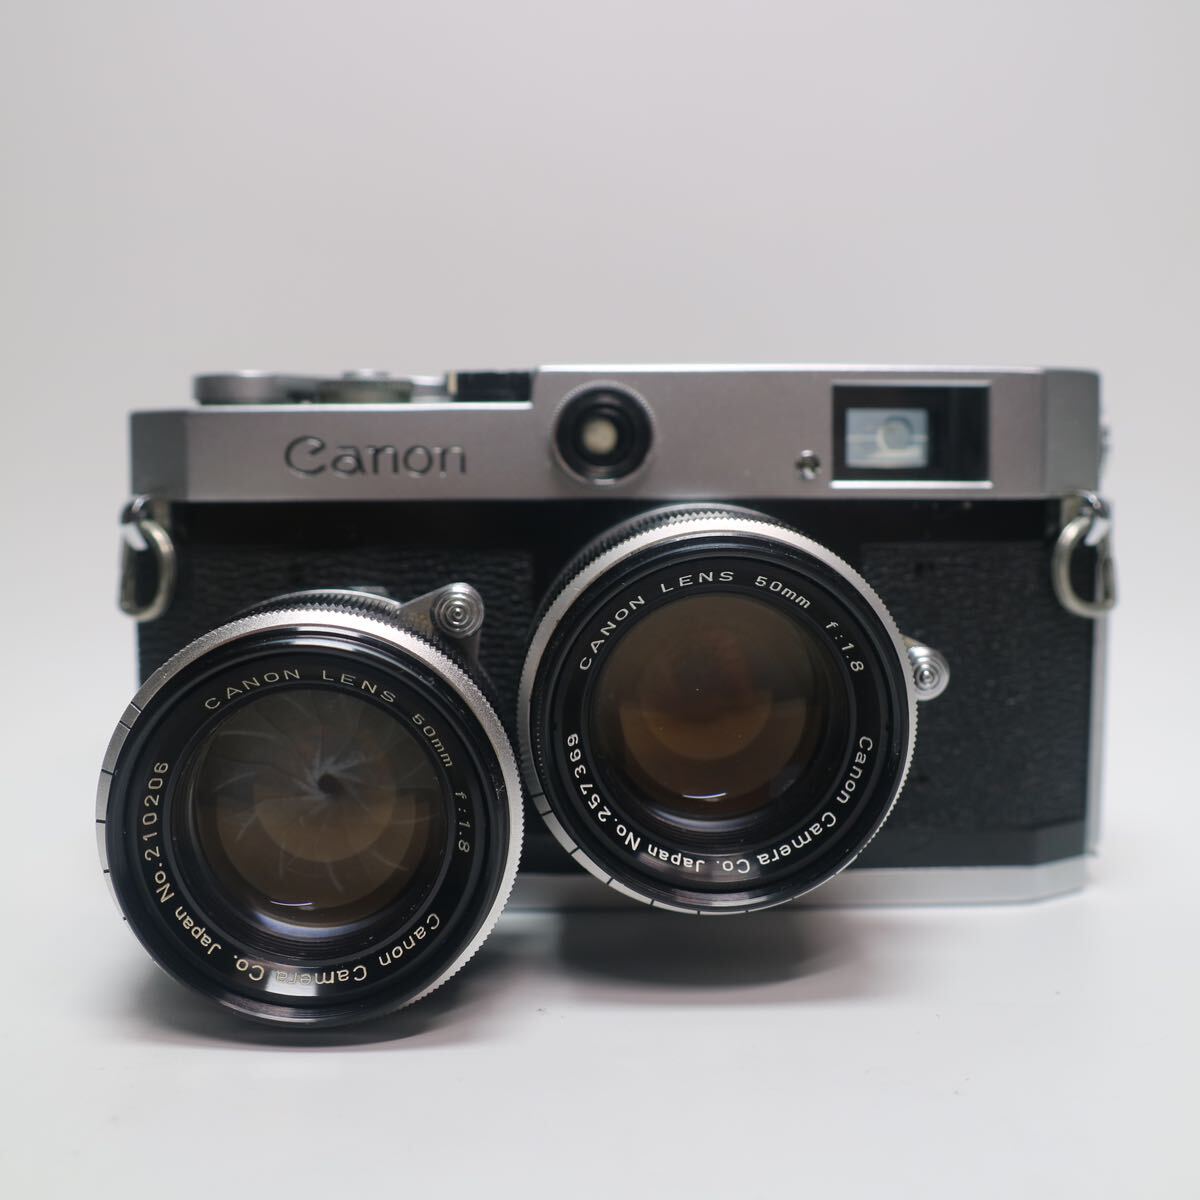 11) CANON CAMERA P CANON LENS 50mm f:1.8 range x2